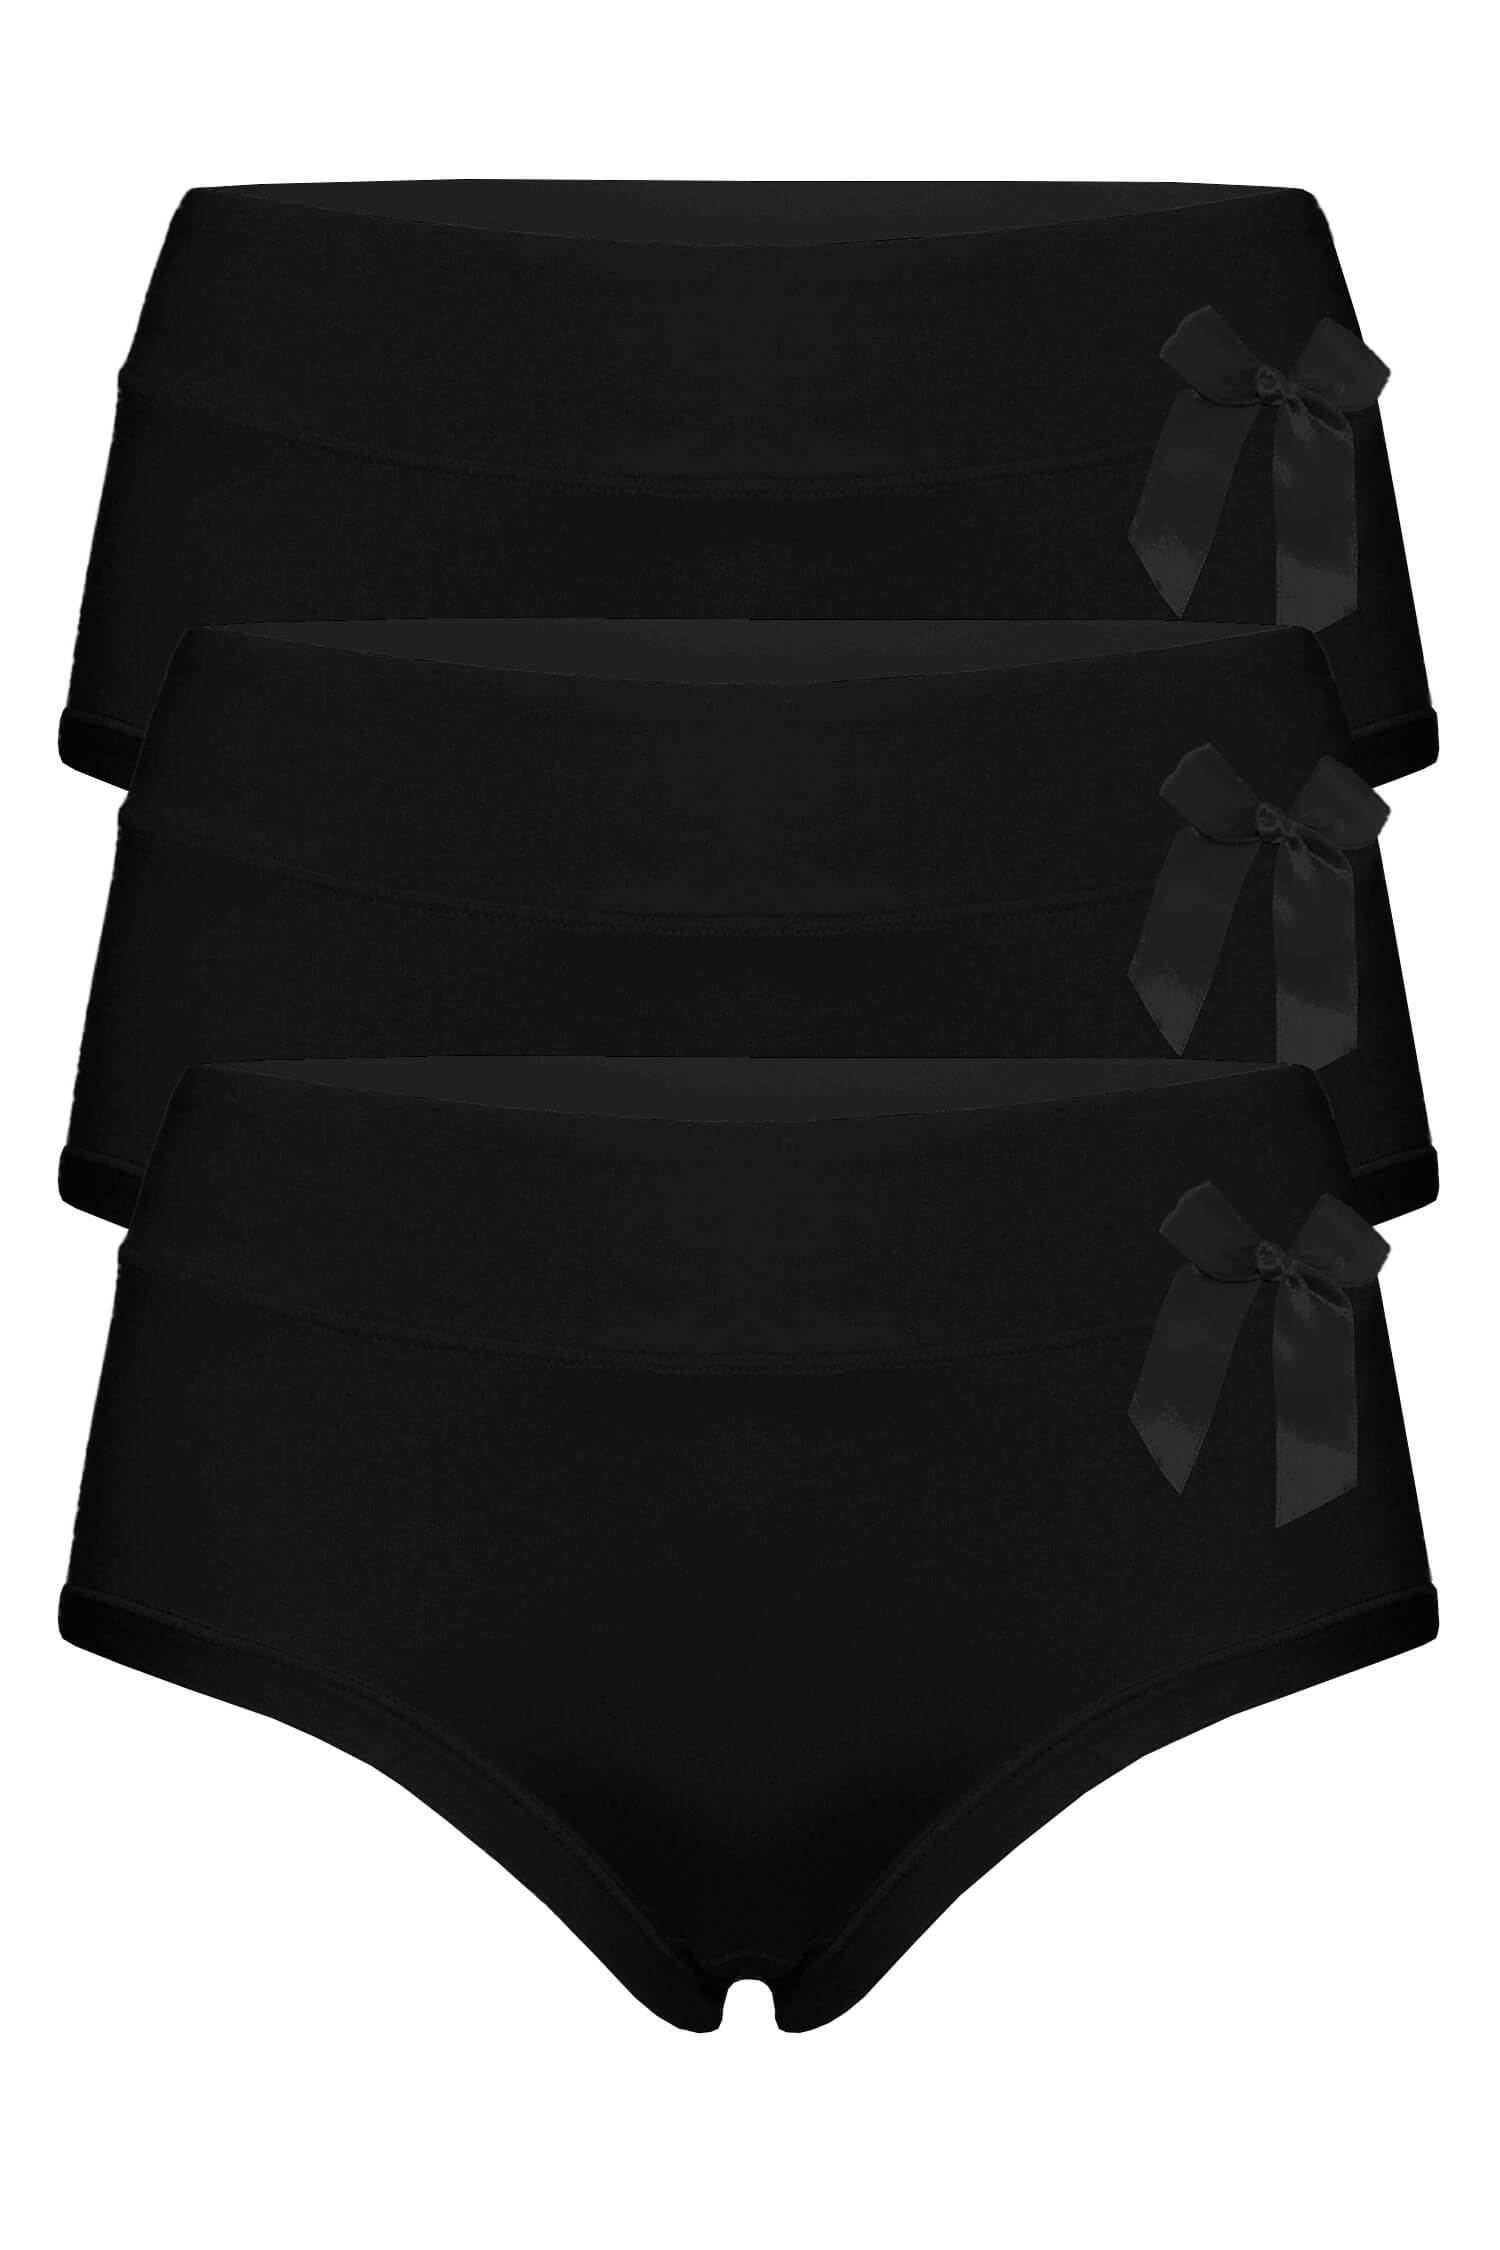 Anet black jednobarevné kalhotky vyšší 9033 - 3 bal XL černá